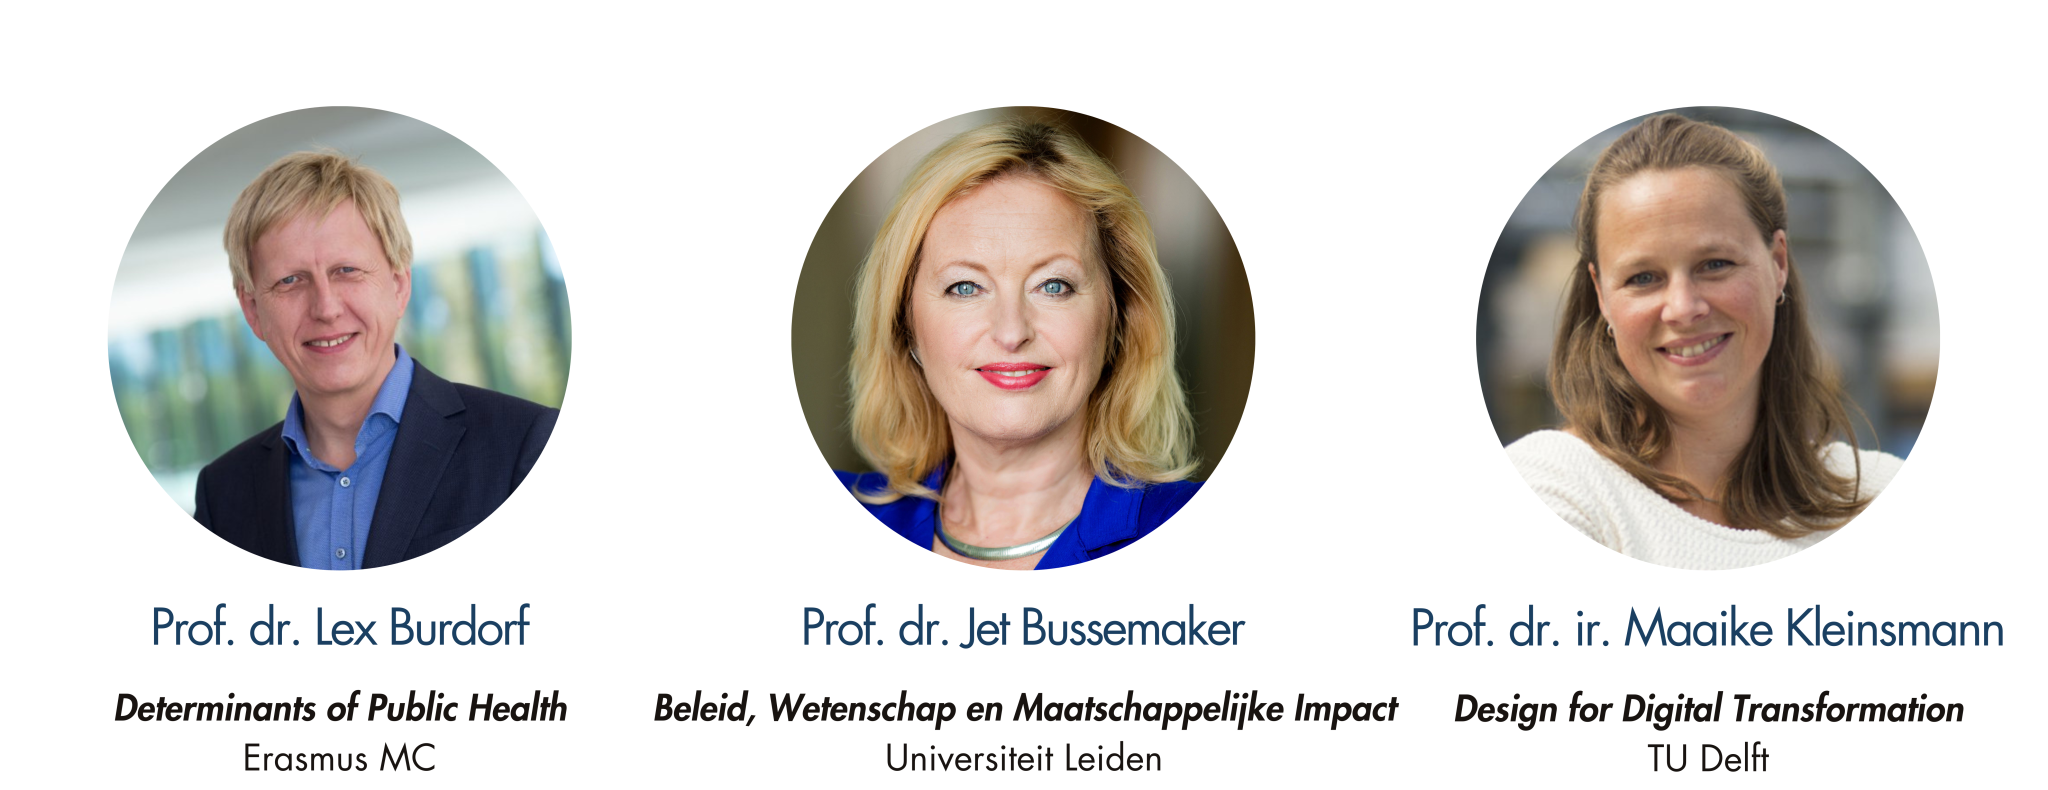 Prof.dr. Lex Burdorf, Prof.dr. Jet Bussemaker, Prof.dr.ir. Maaike Kleinsmann